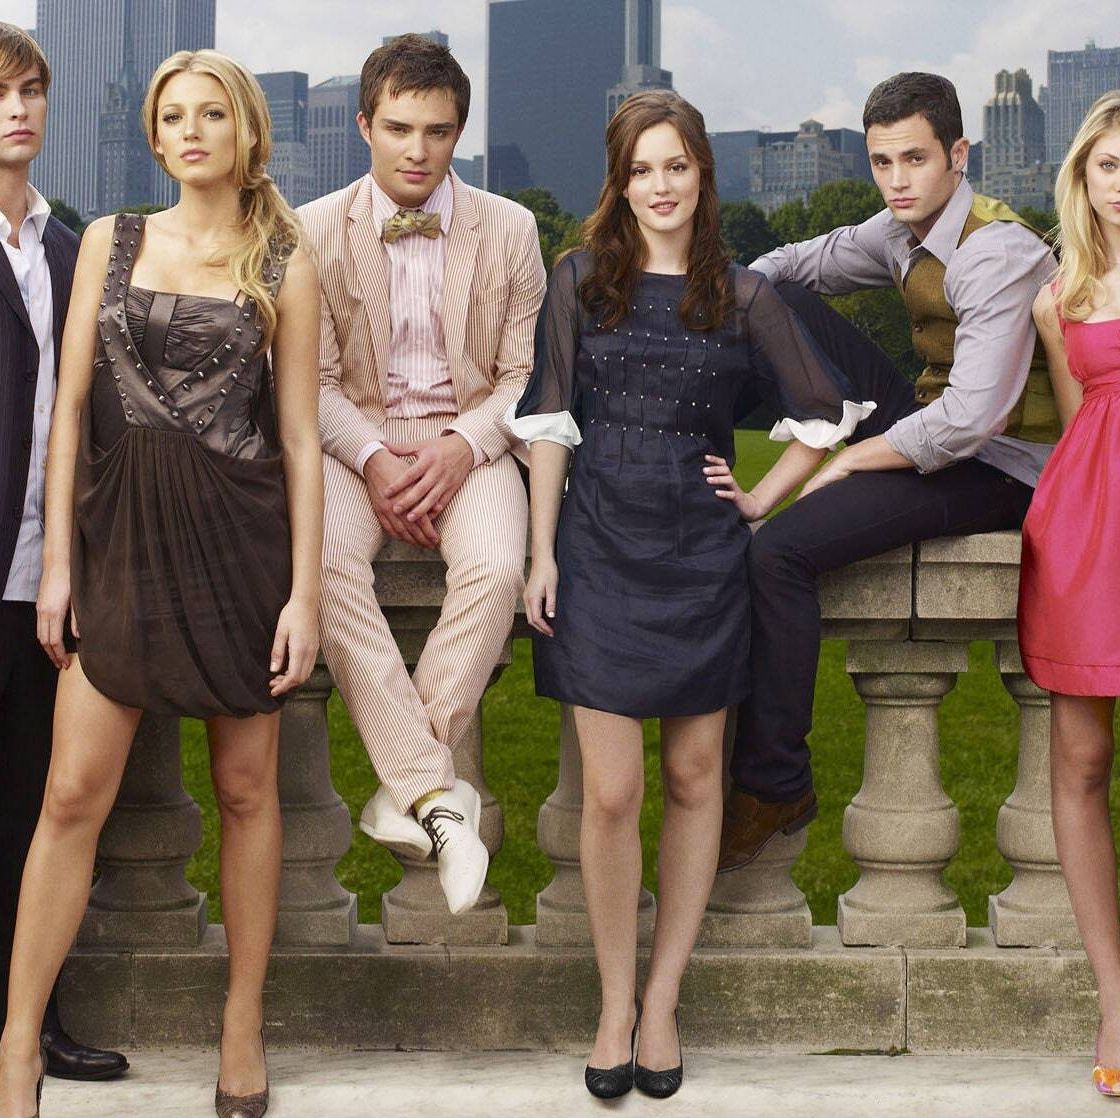 Gossip Girl Season 2 Ending Explained: The End, For Now